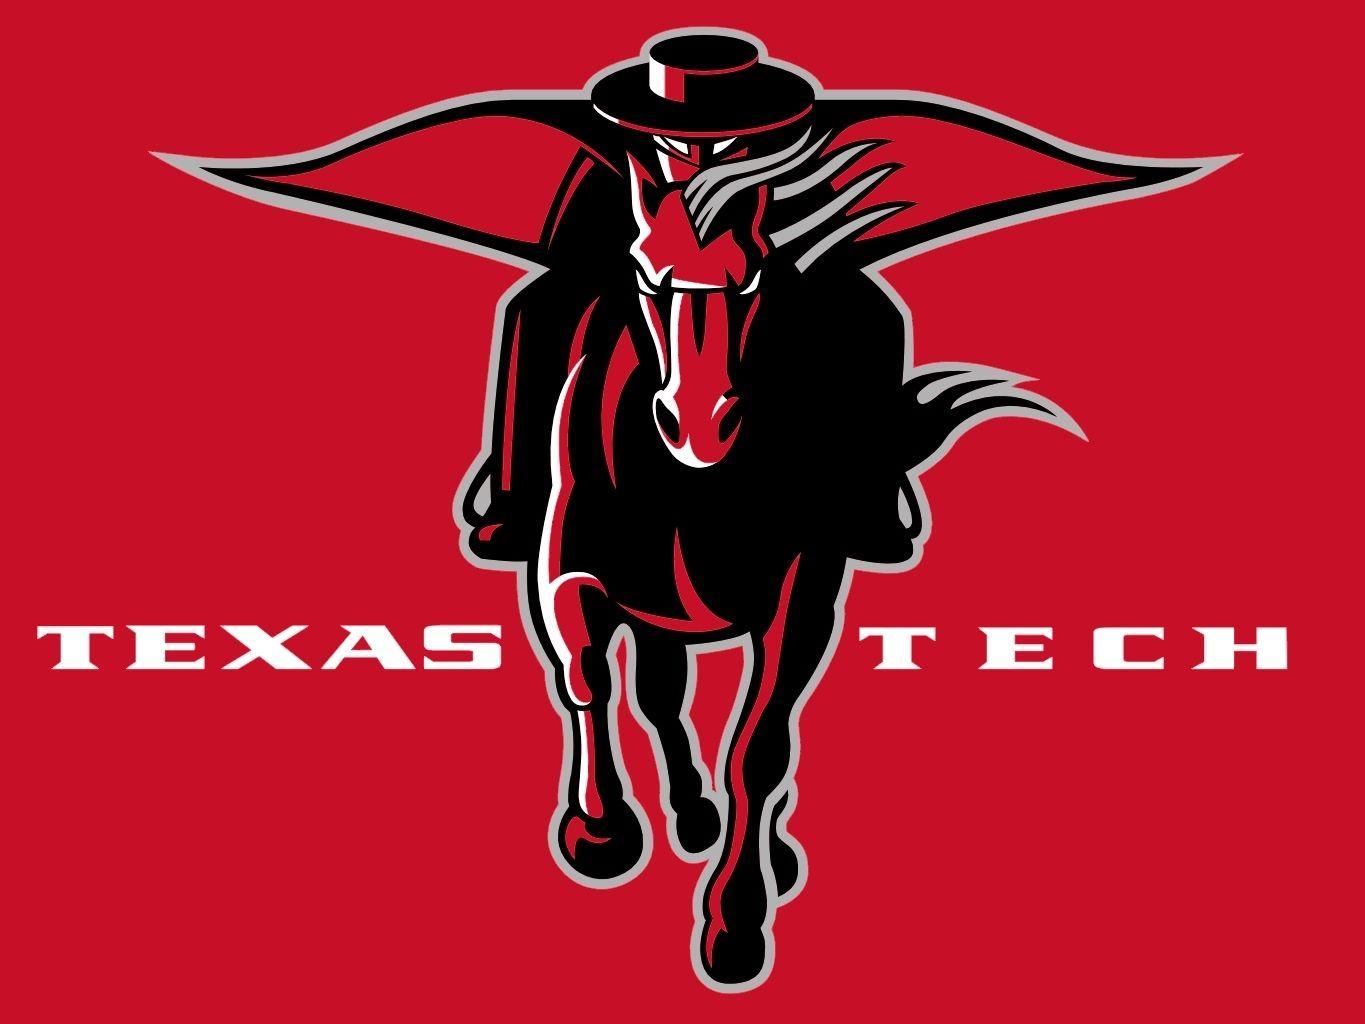 Texas Tech Red Raiders Logo - texas tech logo. Texas Tech Red Raiders. crafts. Texas tech red